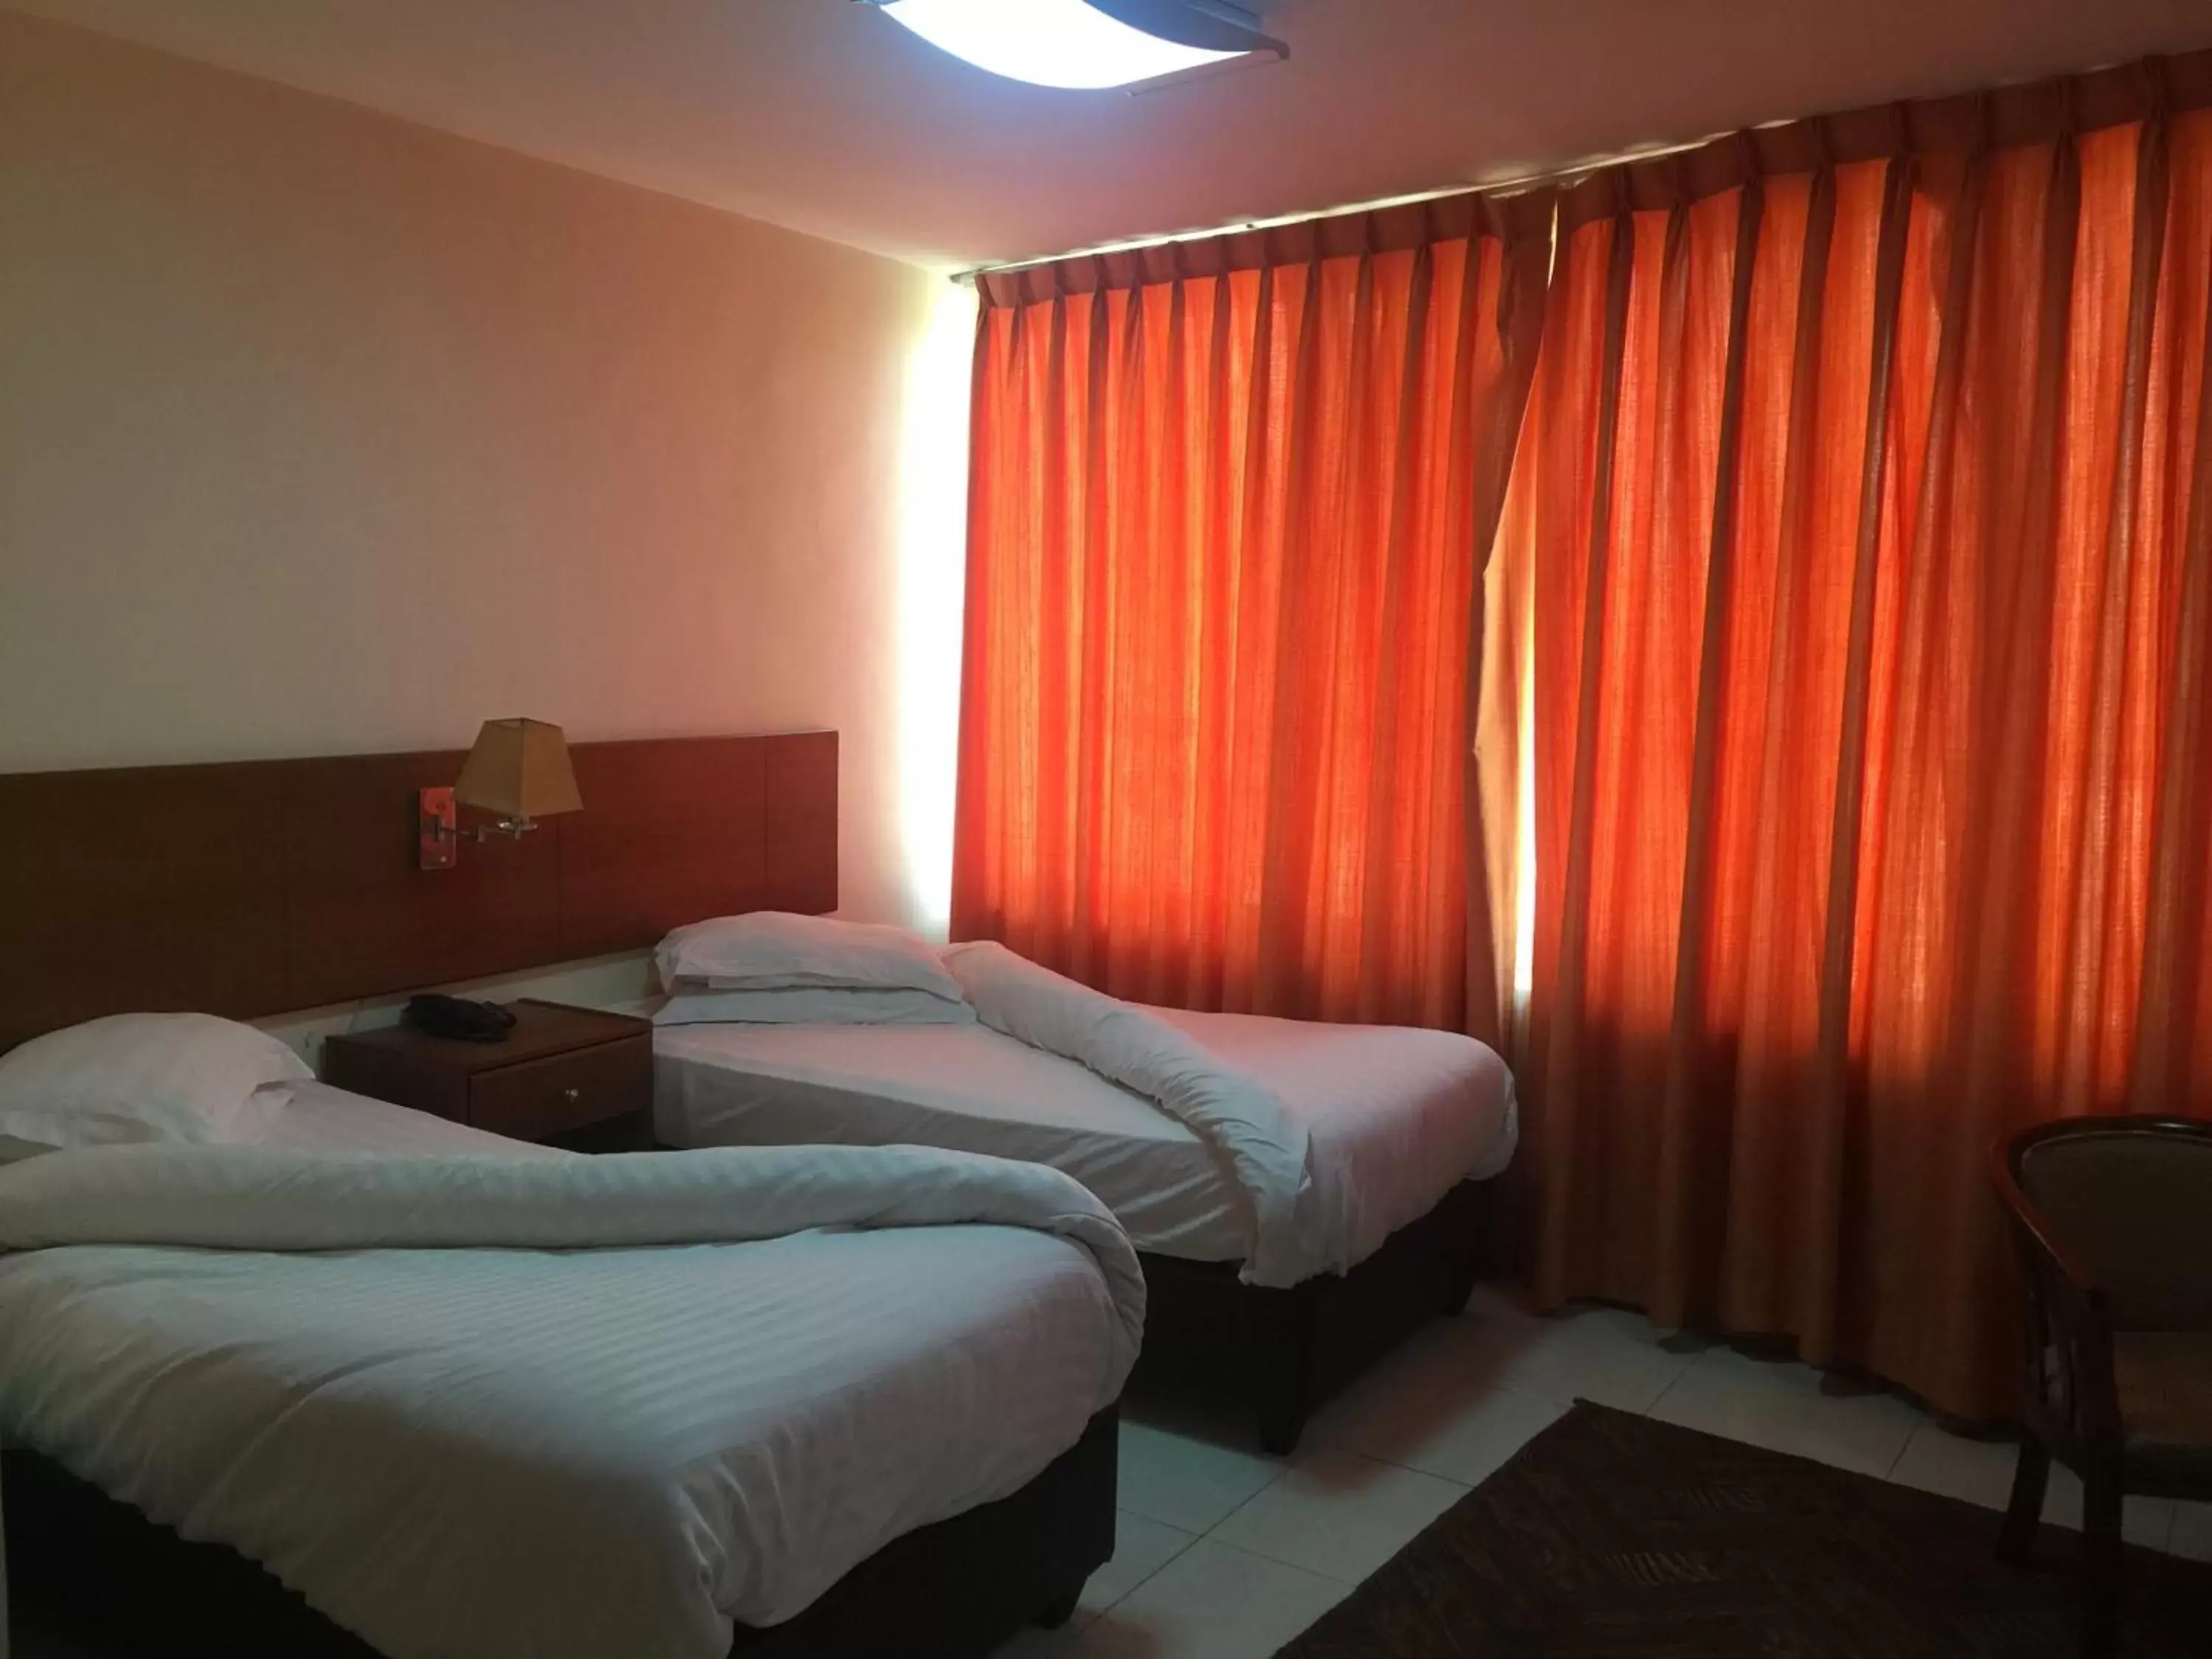 Bed, Room Photo in Zaina Plaza Hotel